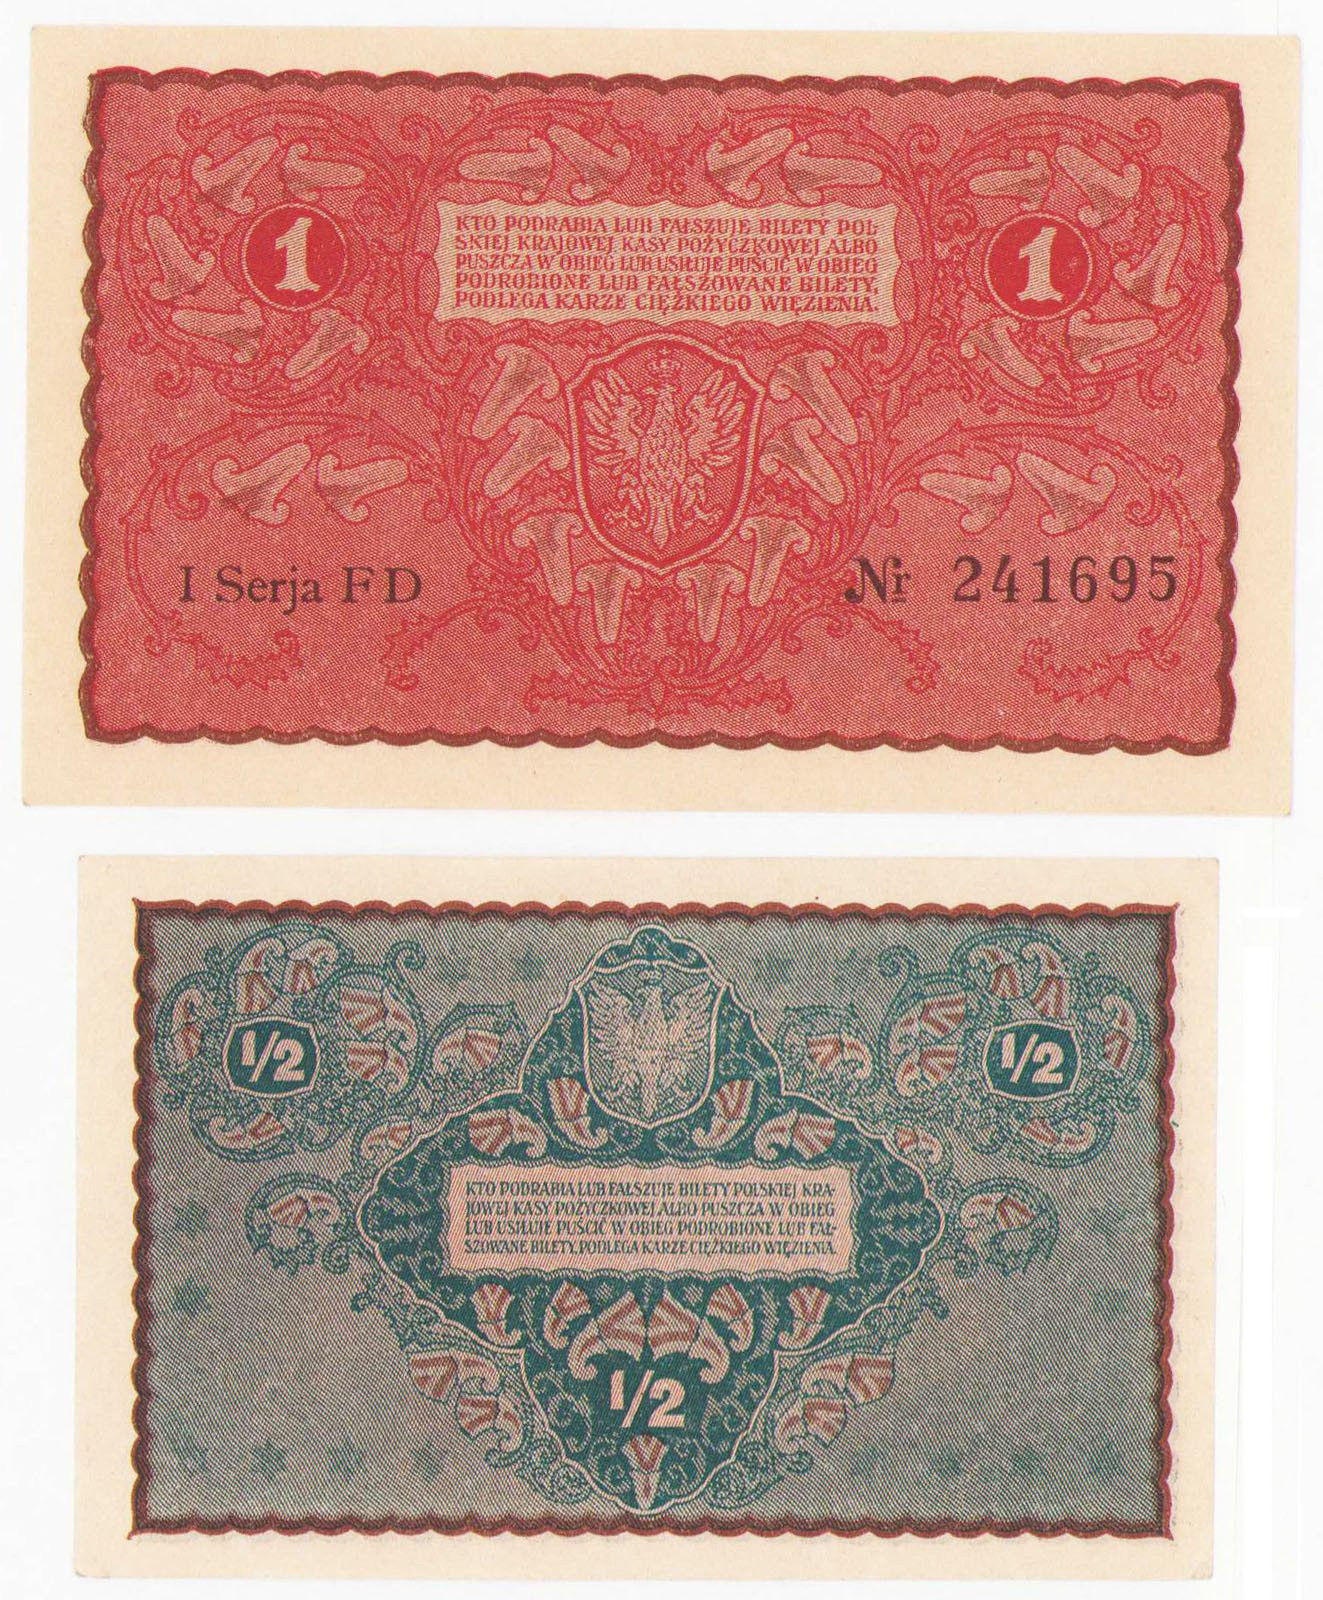 1/2 marki polskiej 1920, 1 marka polska 1919, zestaw 2 banknotów